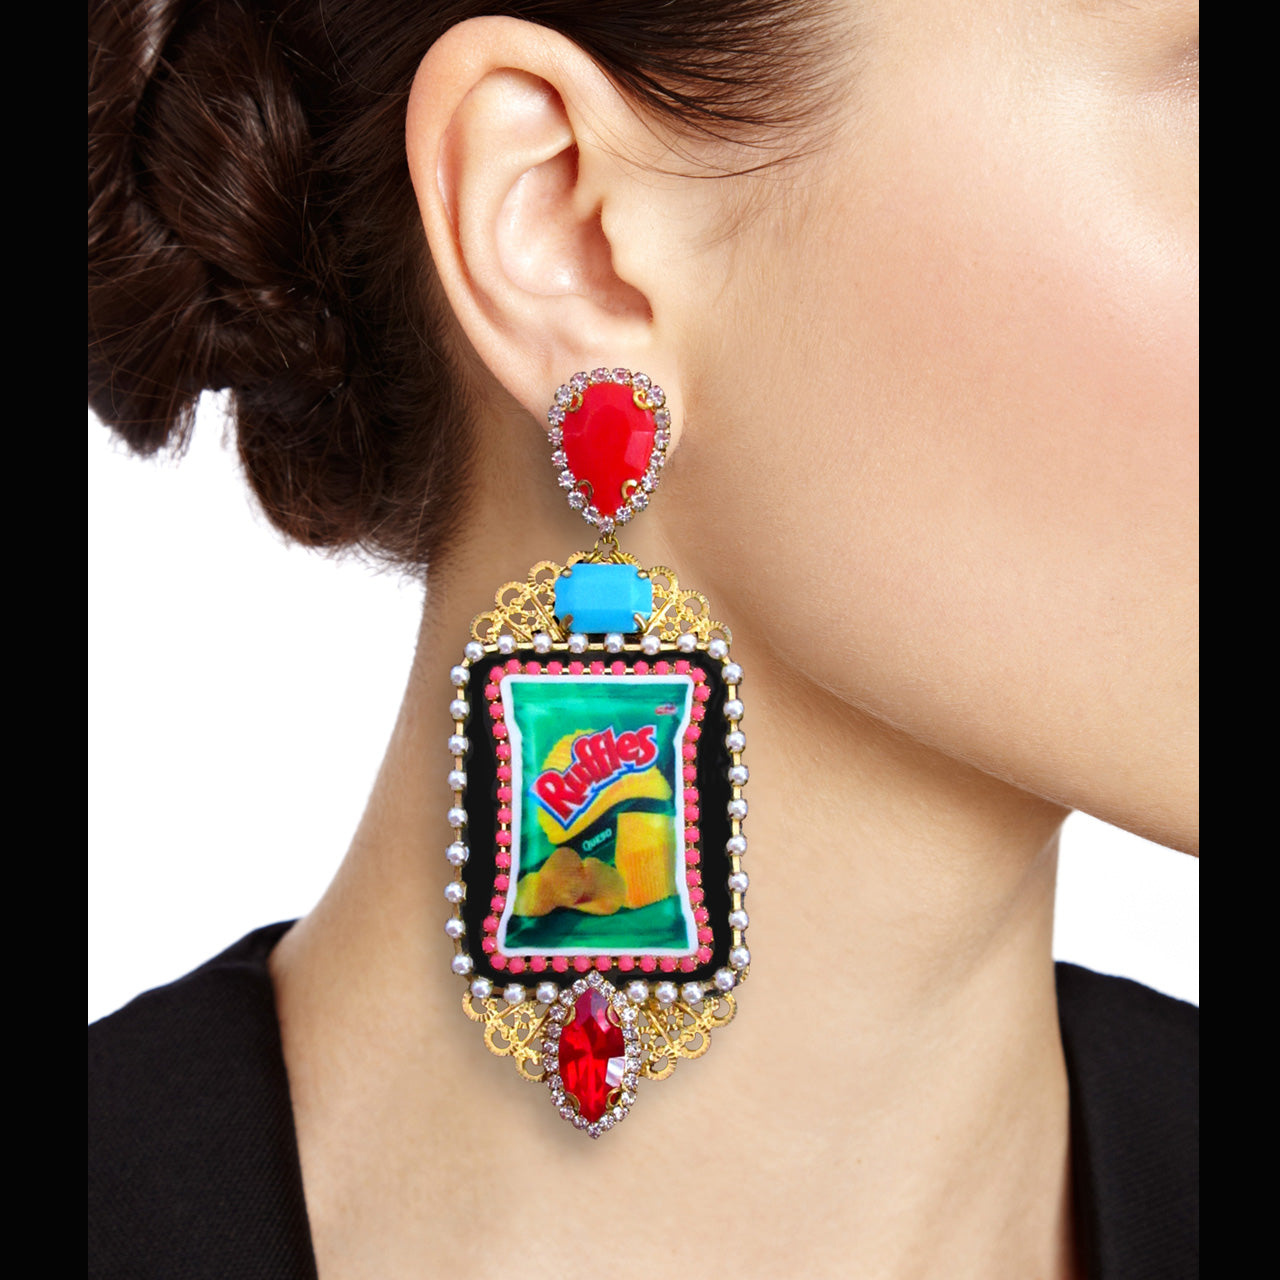 mouchkine jewelry handmade in france pop culture pendant earrings